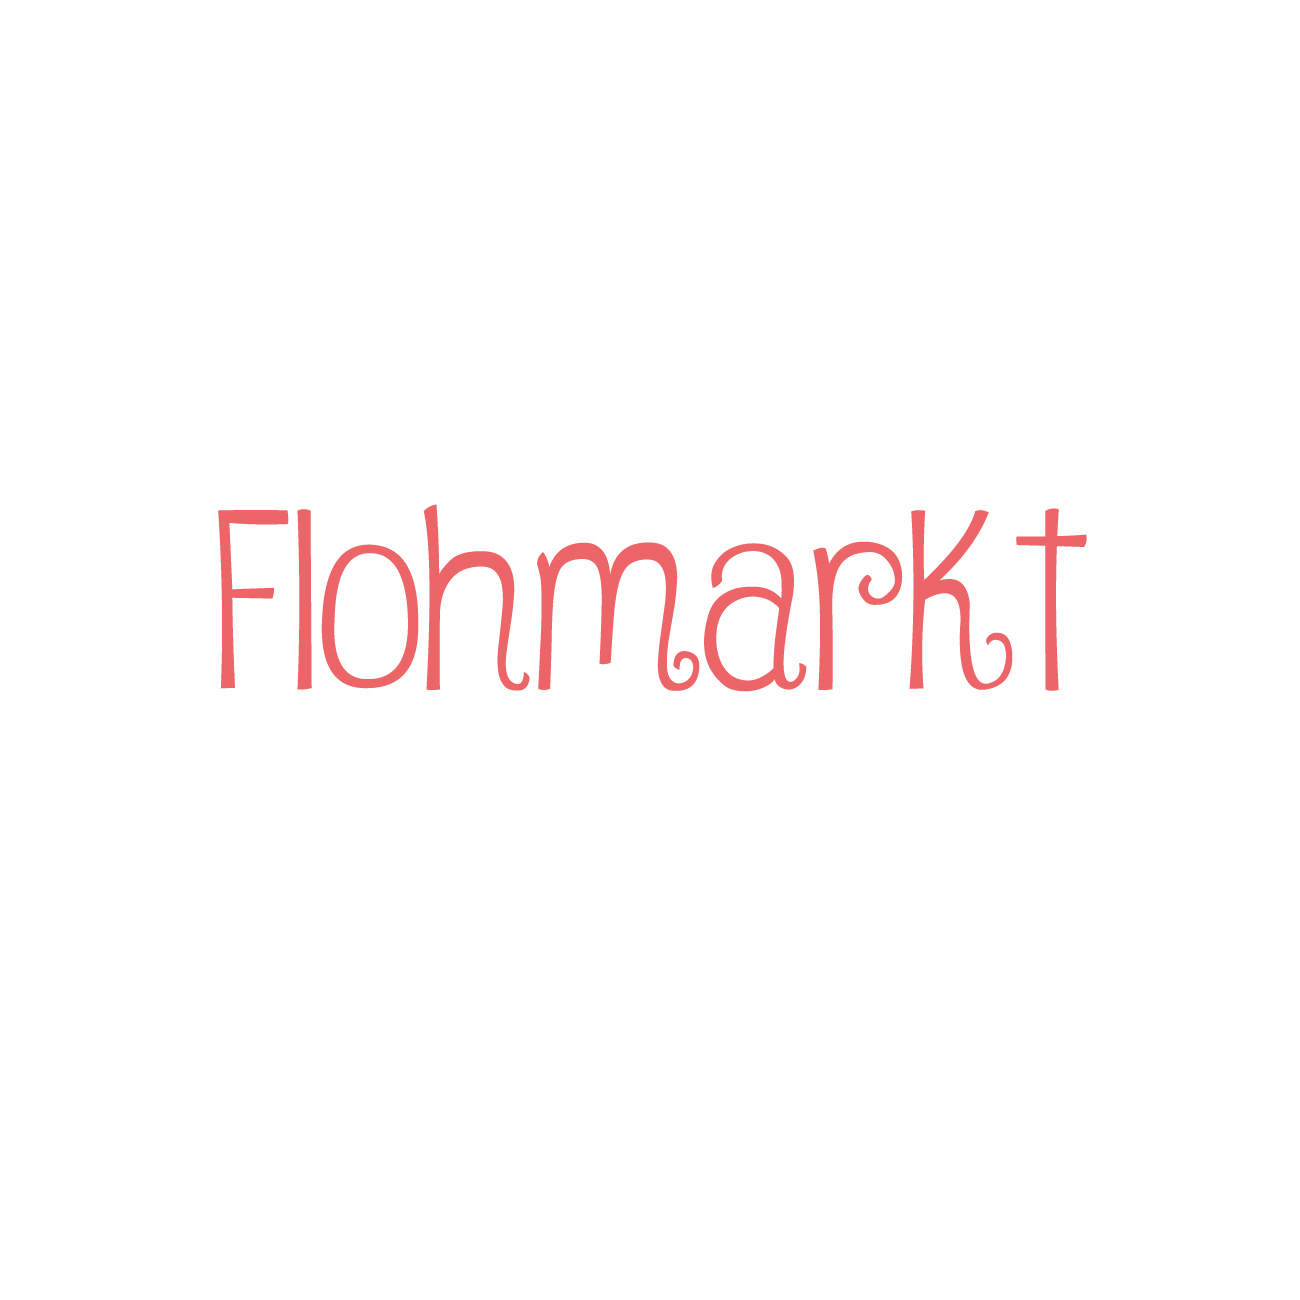 Facebook_Flohmarkt